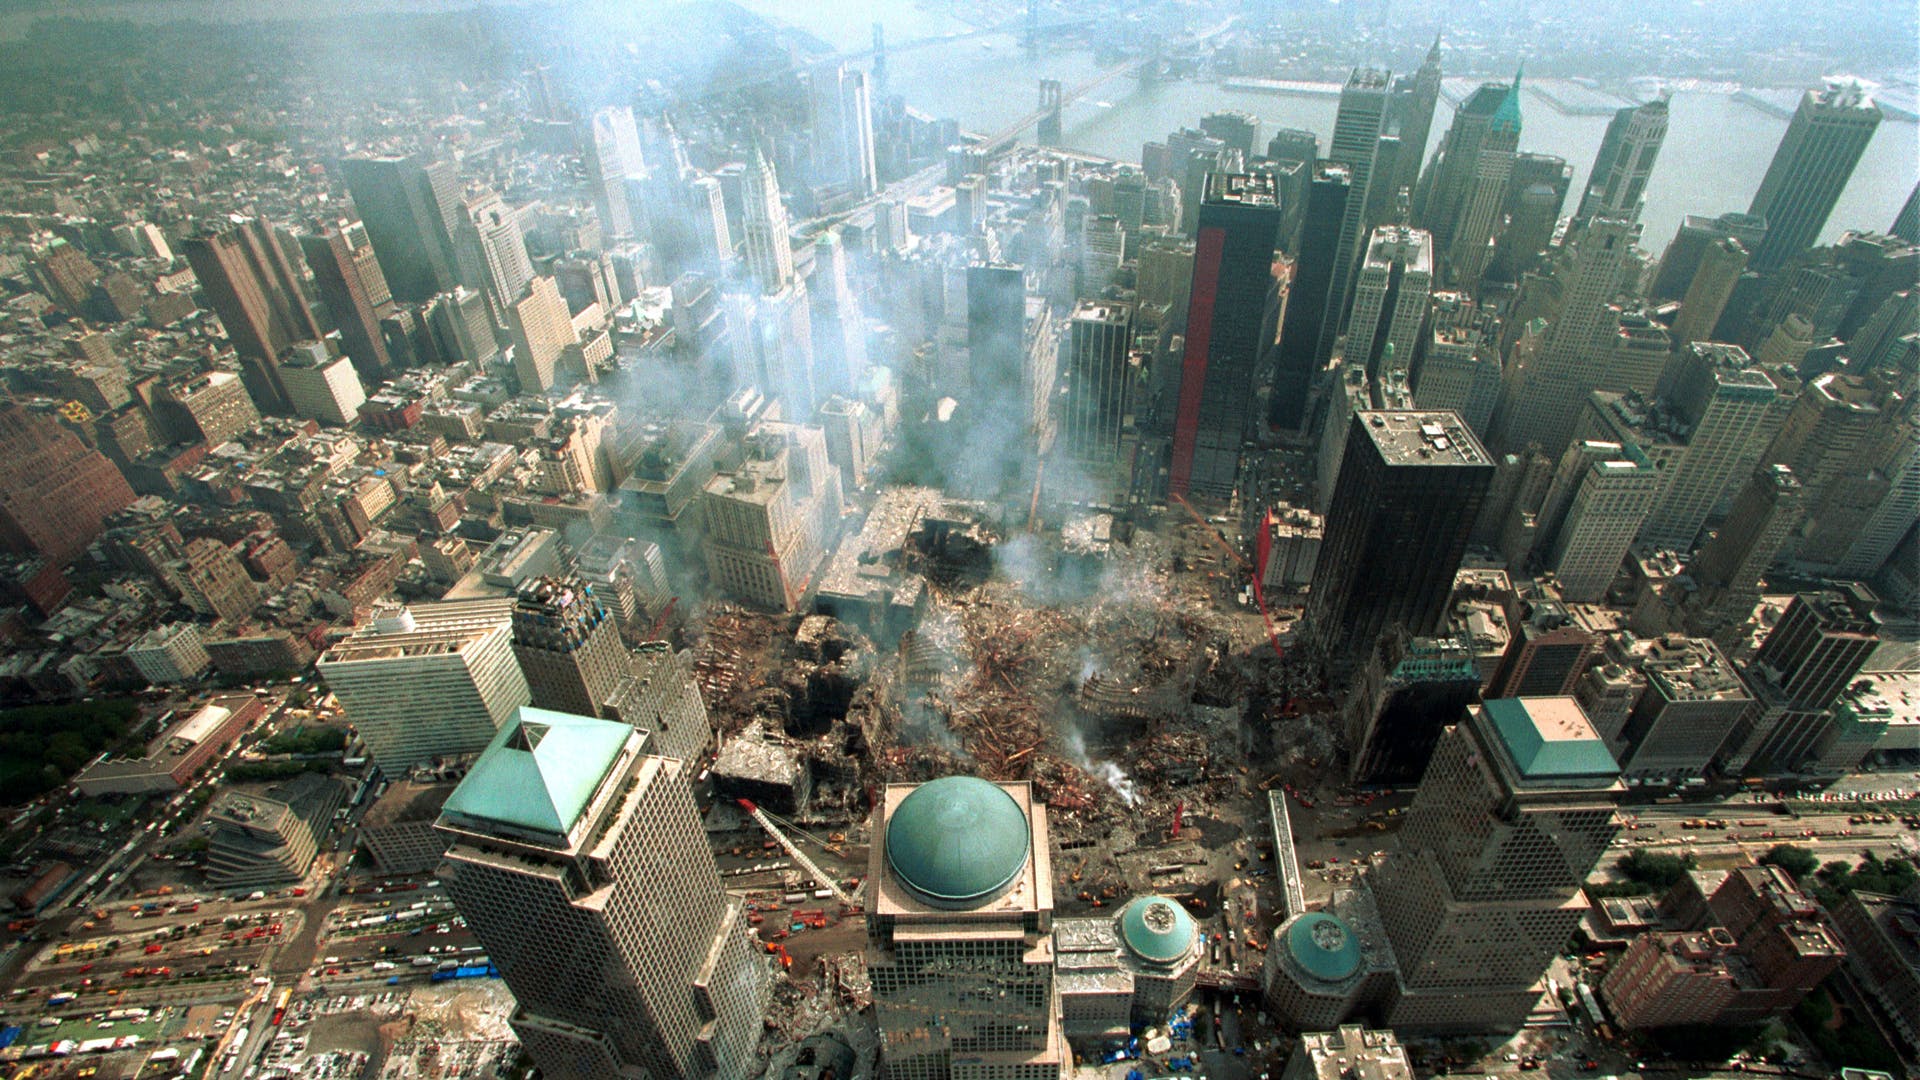 Https   Www.history.com .image MTY2NzA0OTc2NTkxMDcwNTYw September 9 11 Ground Zero Gettyimages 1166177 